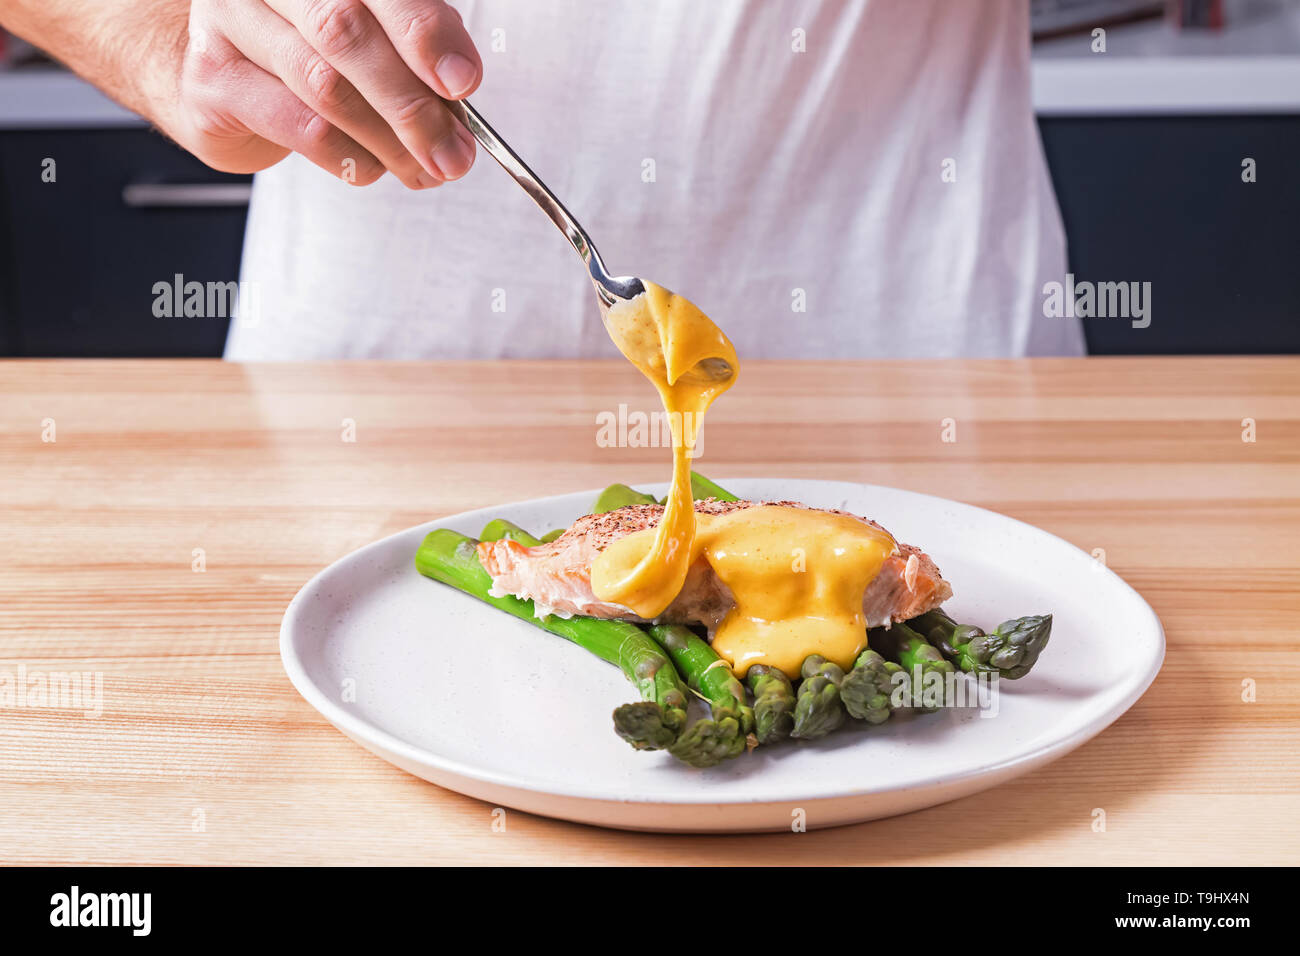 Las manos del hombre verter la salsa holandesa en la parte superior de  delicioso salmón al horno con espárragos verdes cocidos al vapor. Proceso  de preparación de la presentación de la comida